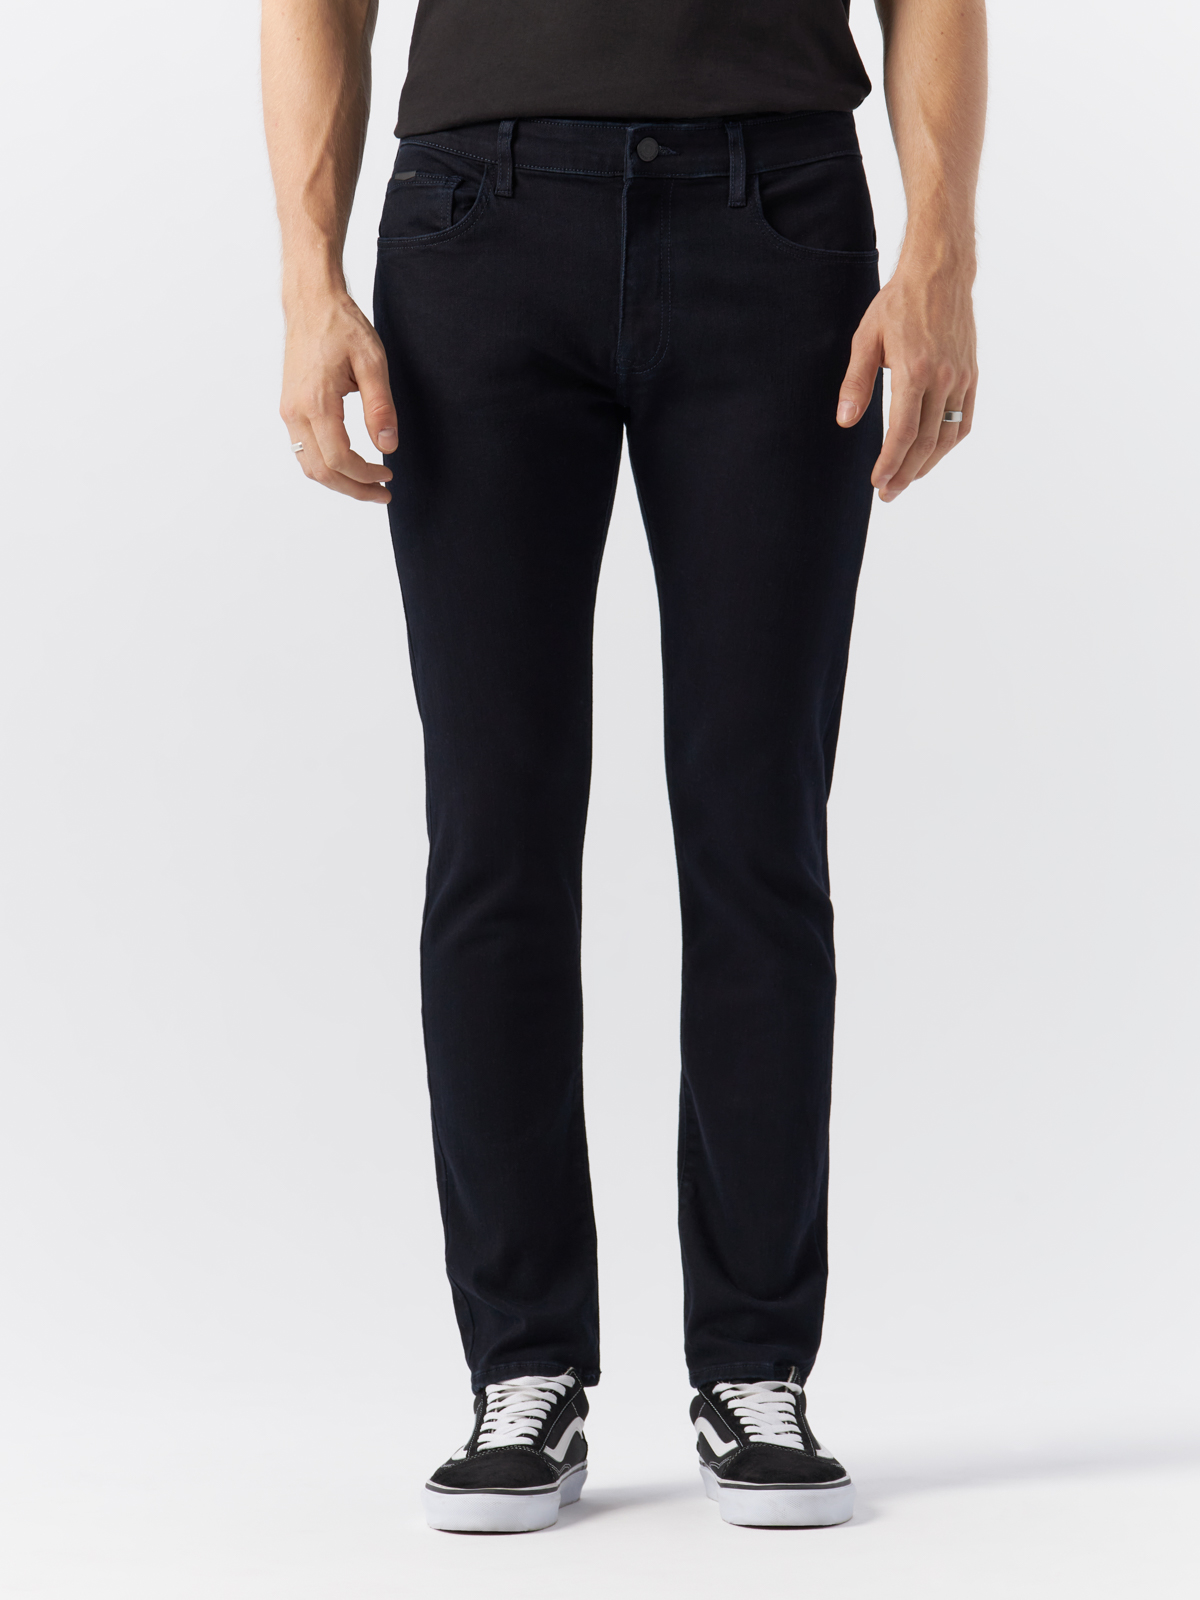 Джинсы Cross Jeans для мужчин, E 185-169, размер 32-30, чёрные